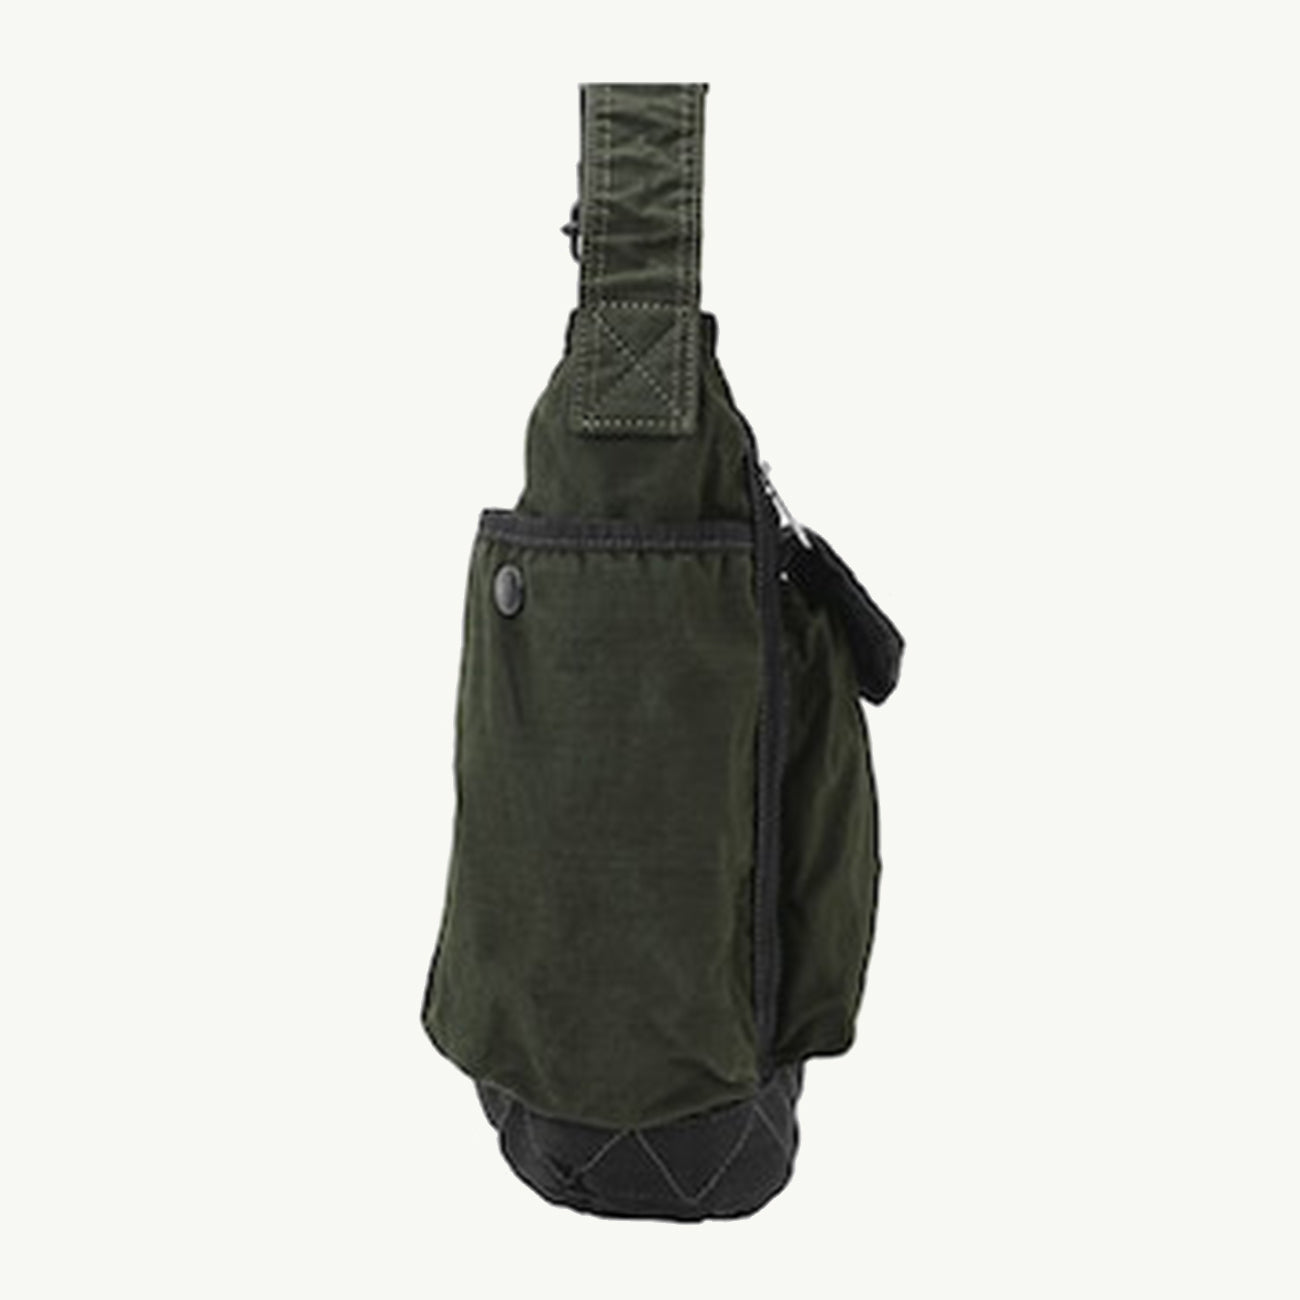 Crag Shoulder Bag Small - Khaki